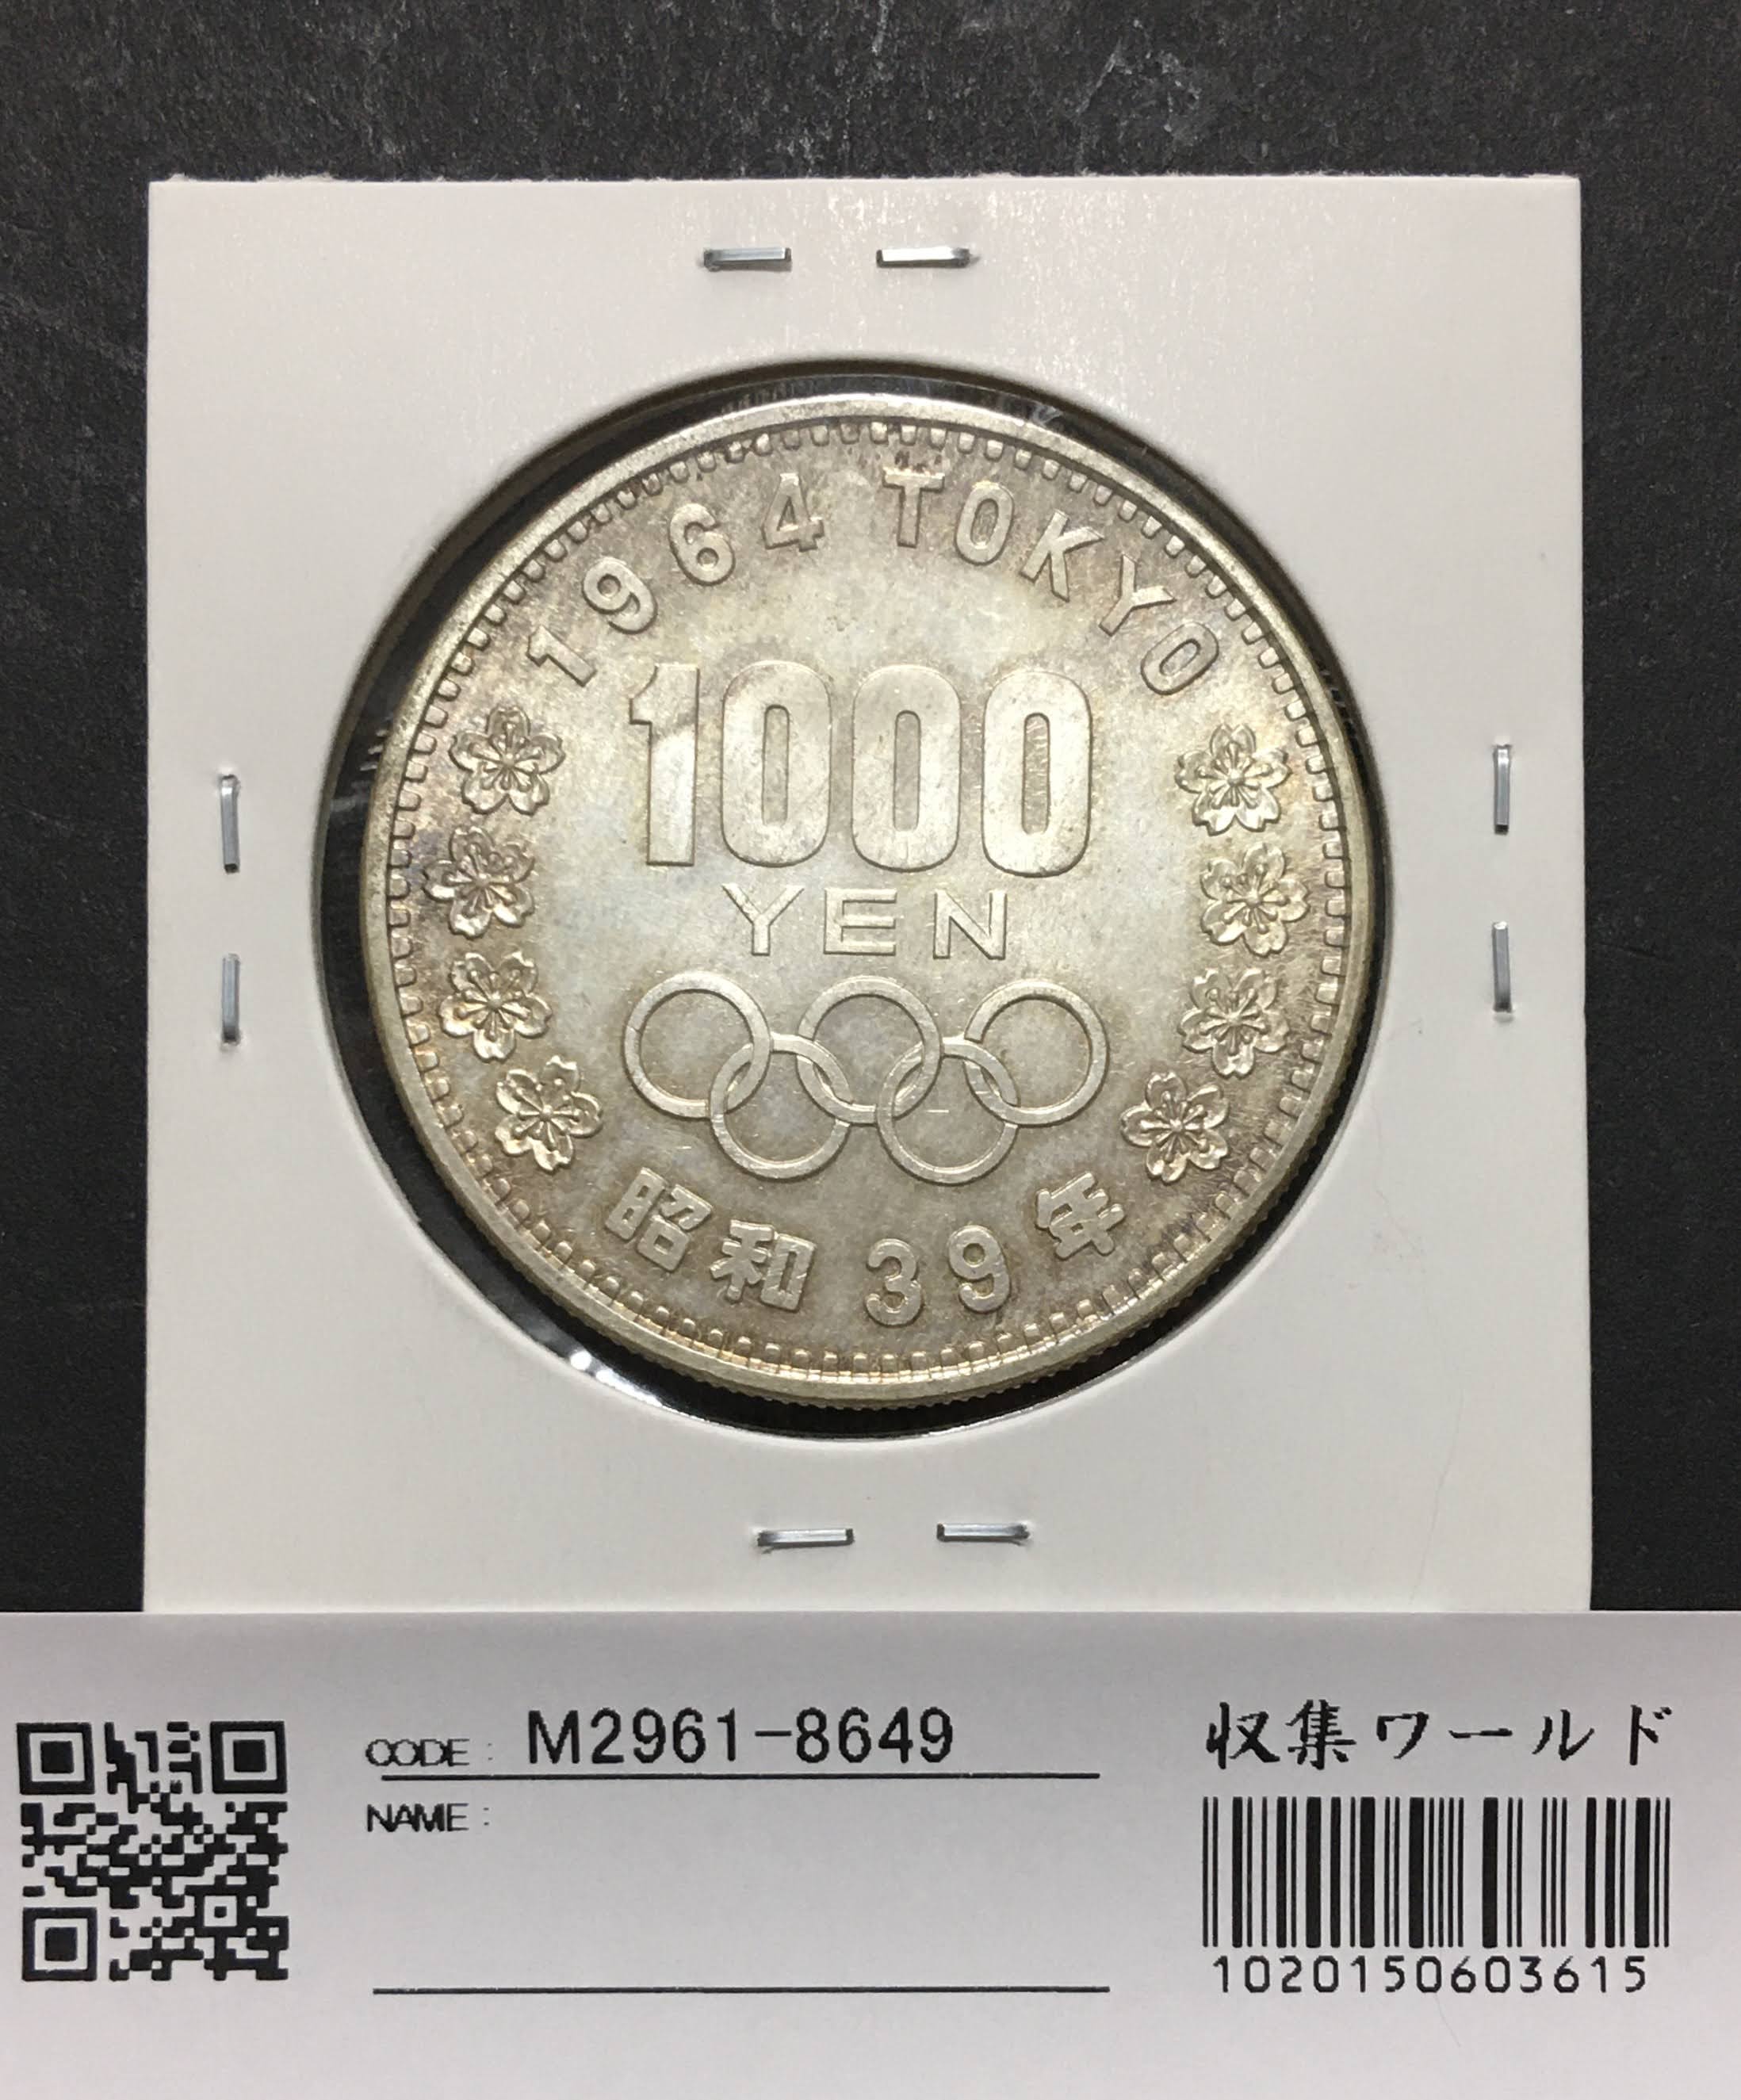 1964年(昭和39) 東京オリンピック記念 1000円銀貨 極美品〜未使用-8649